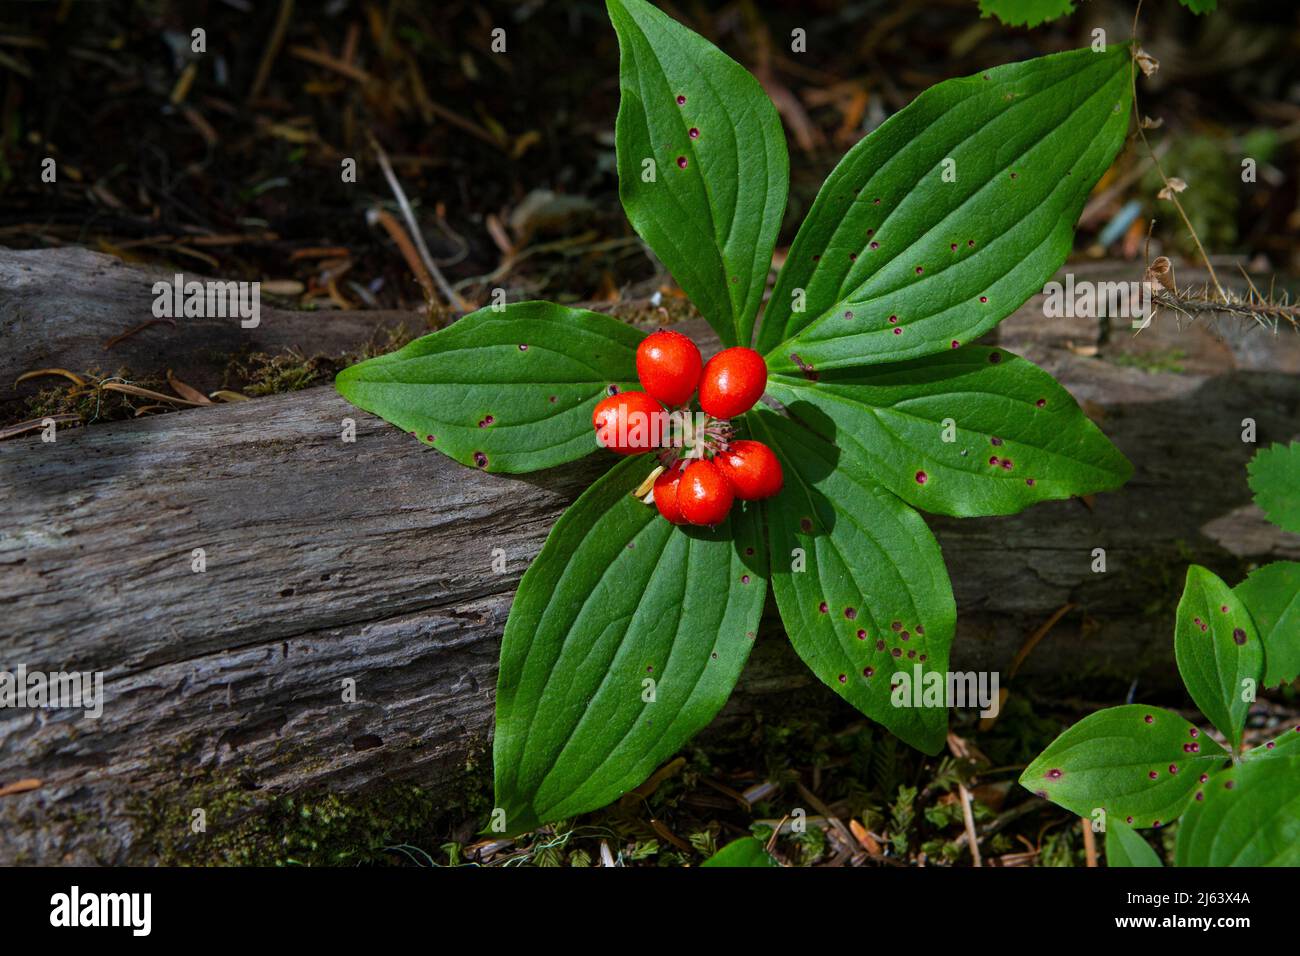 Westliche Bunchberry, Cornus unalaschkensis, mit leuchtend roten Steinbeeren (Früchte) ist eine verbreitete einheimische Bodendecke in pazifischen Nordwestwäldern. Stockfoto